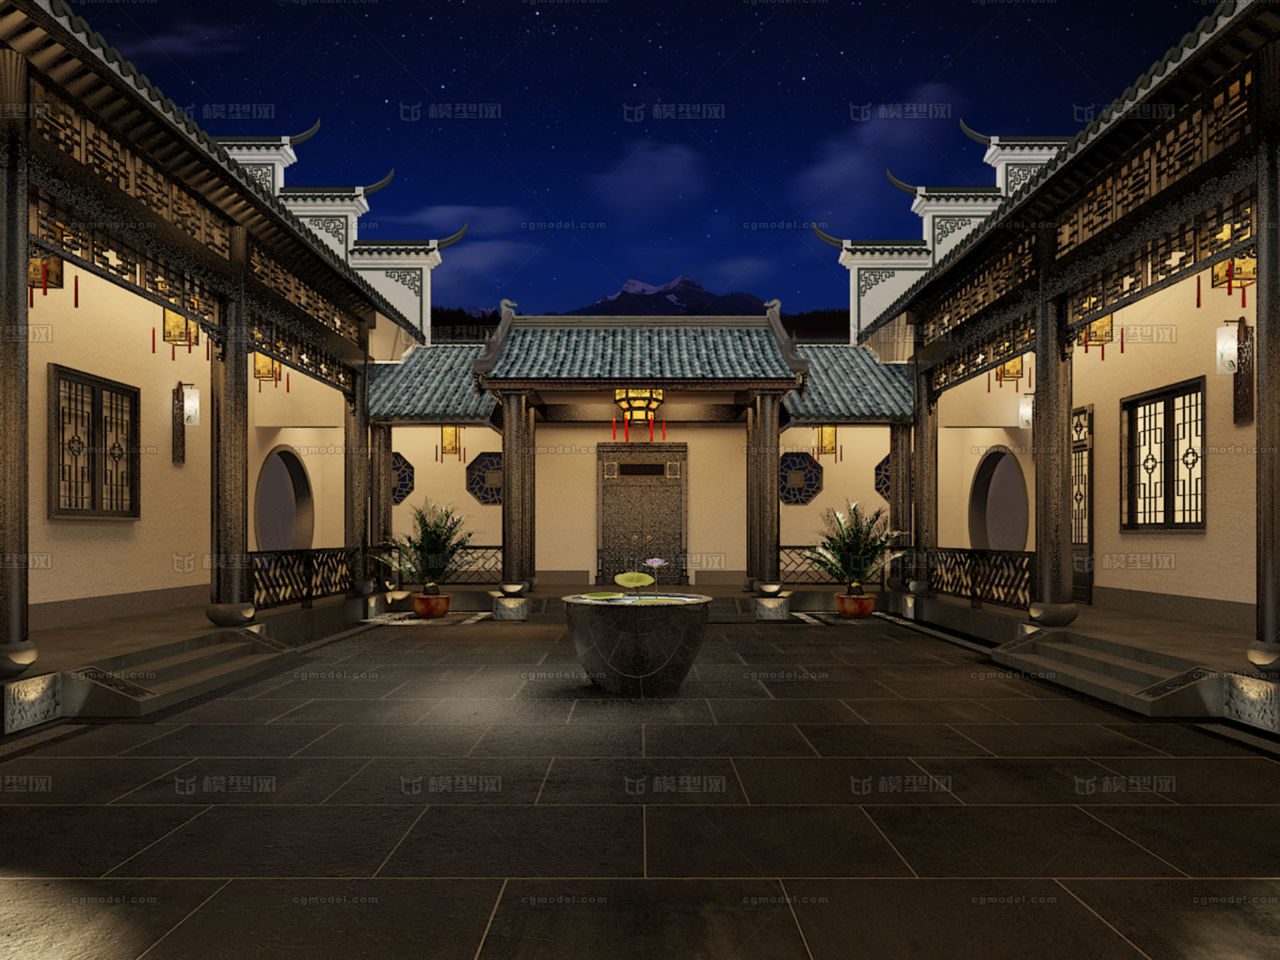 中式古建,徽派建筑,四合院,古典建筑,中国古建,马头墙,古建别墅,中式